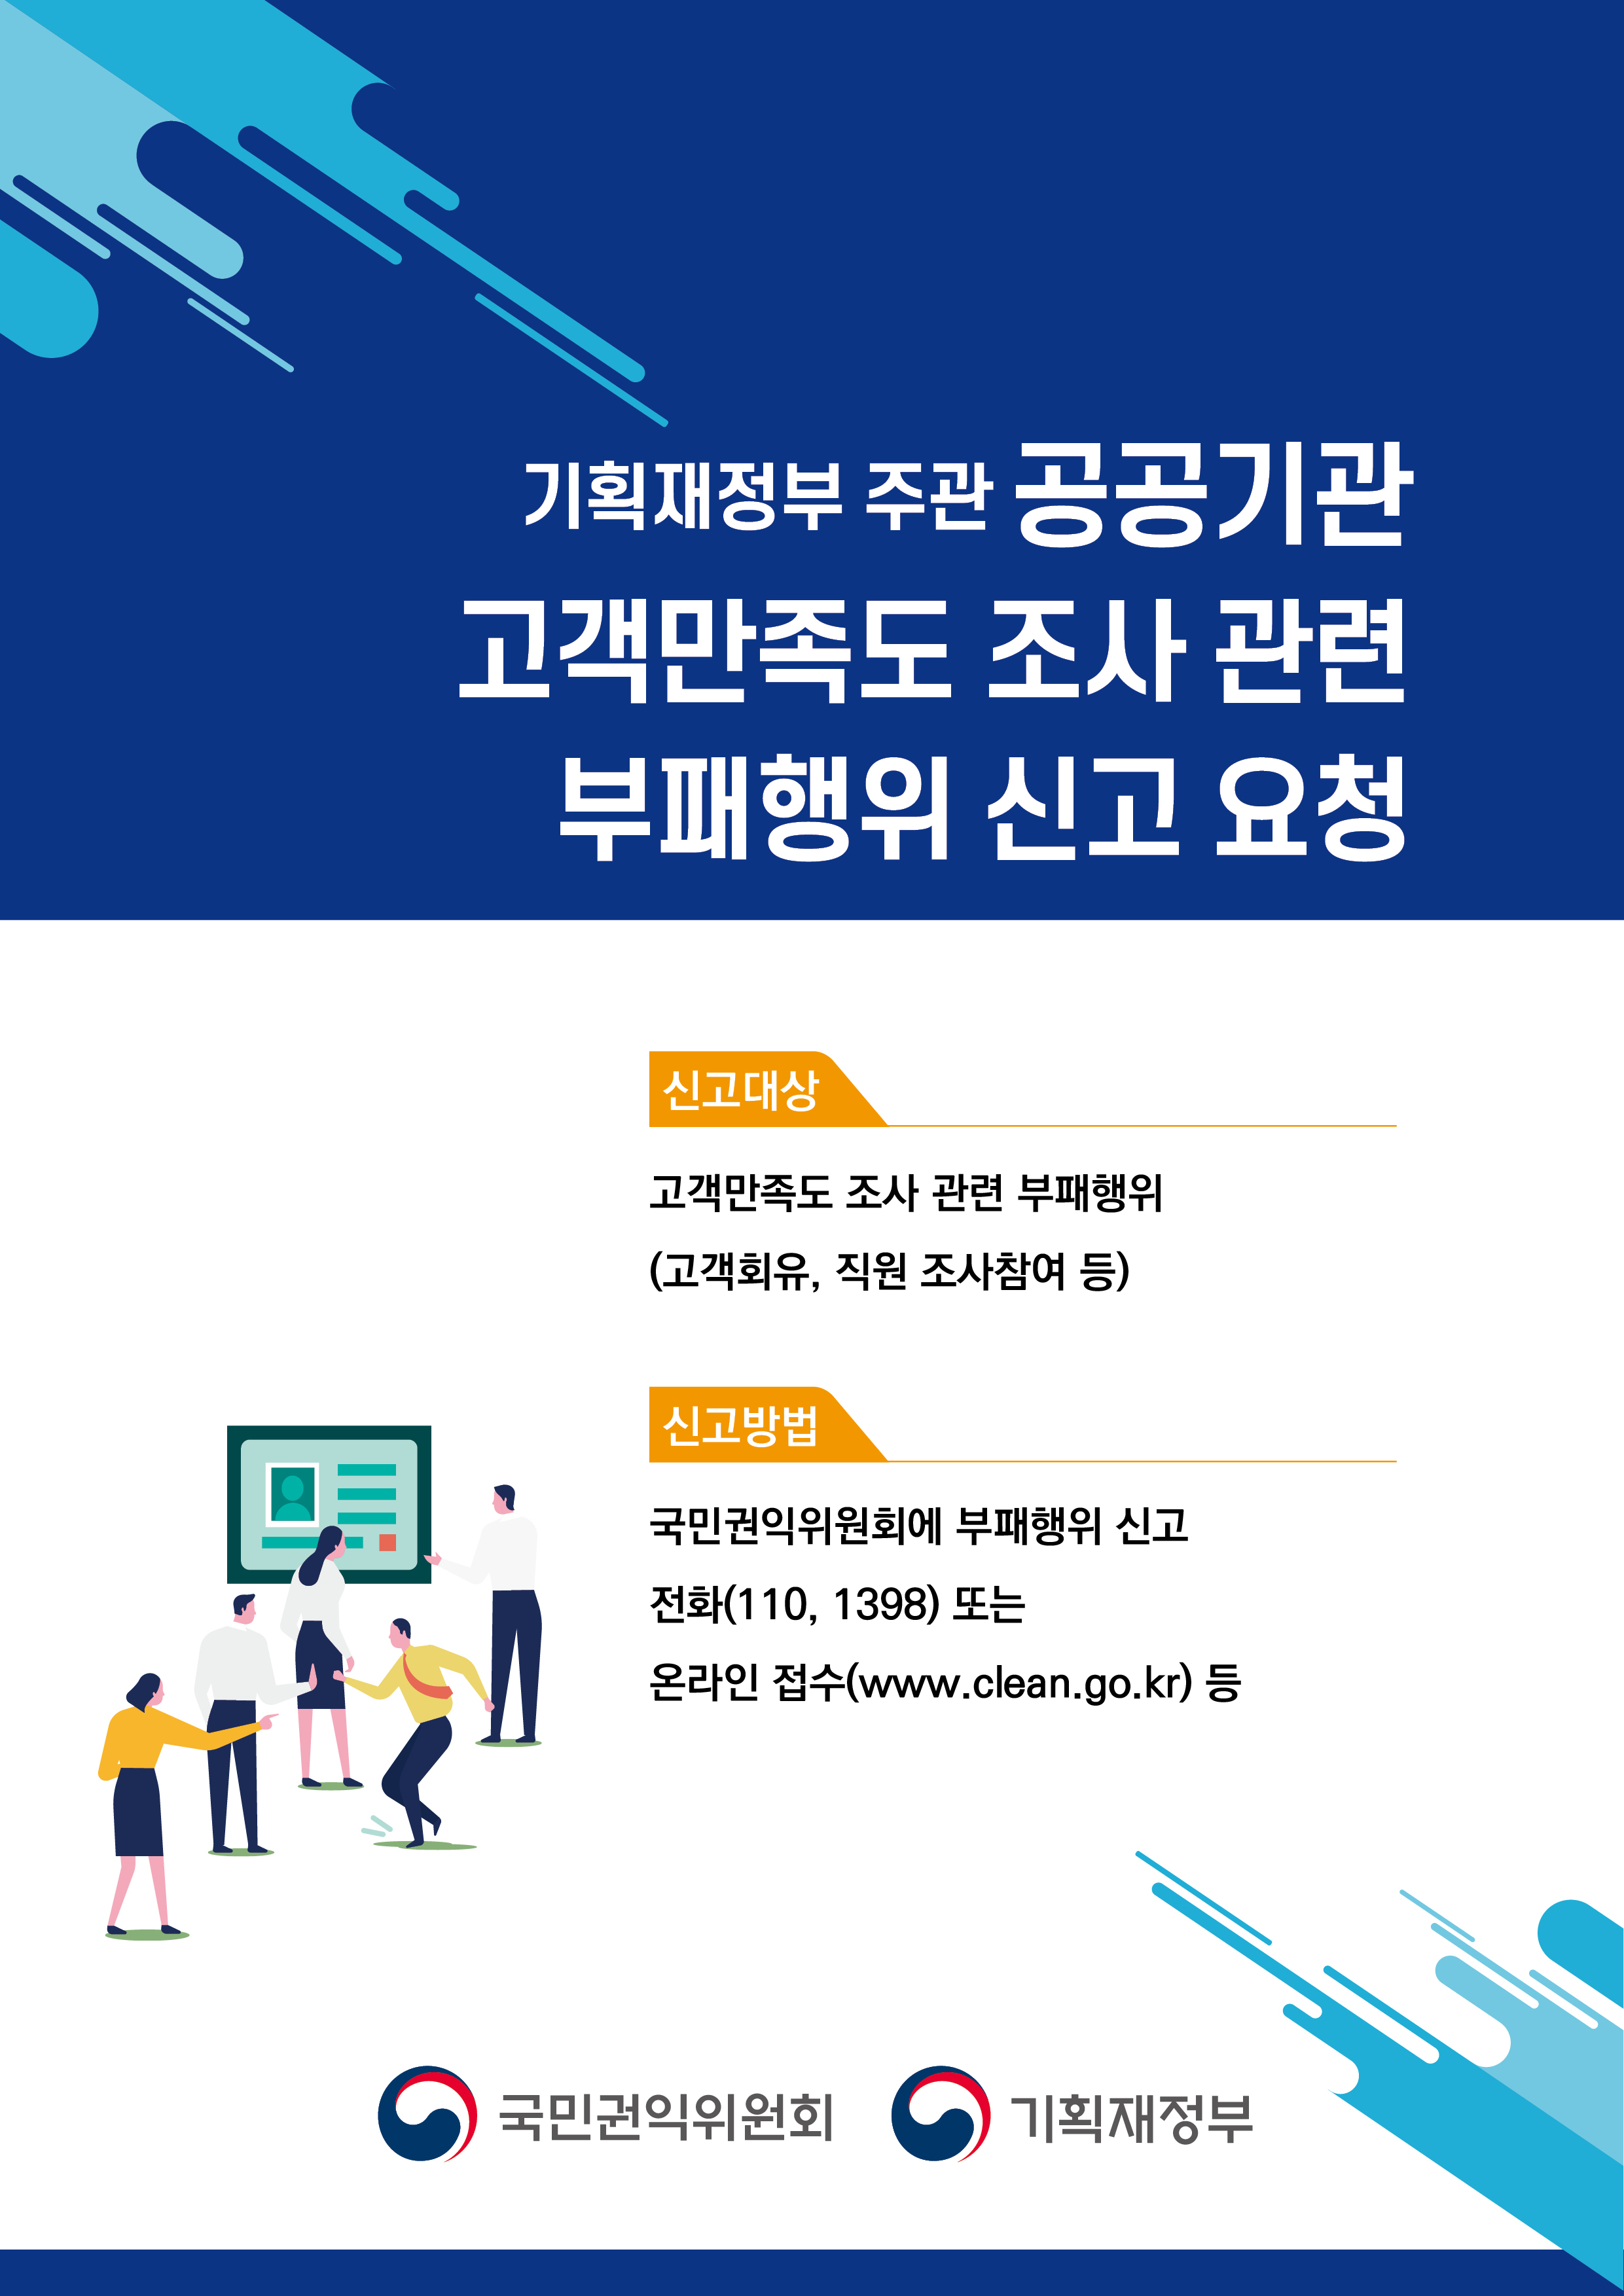 ‘공공기관 고객만족도 조사’관련 부패행위 신고 안내 포스터'